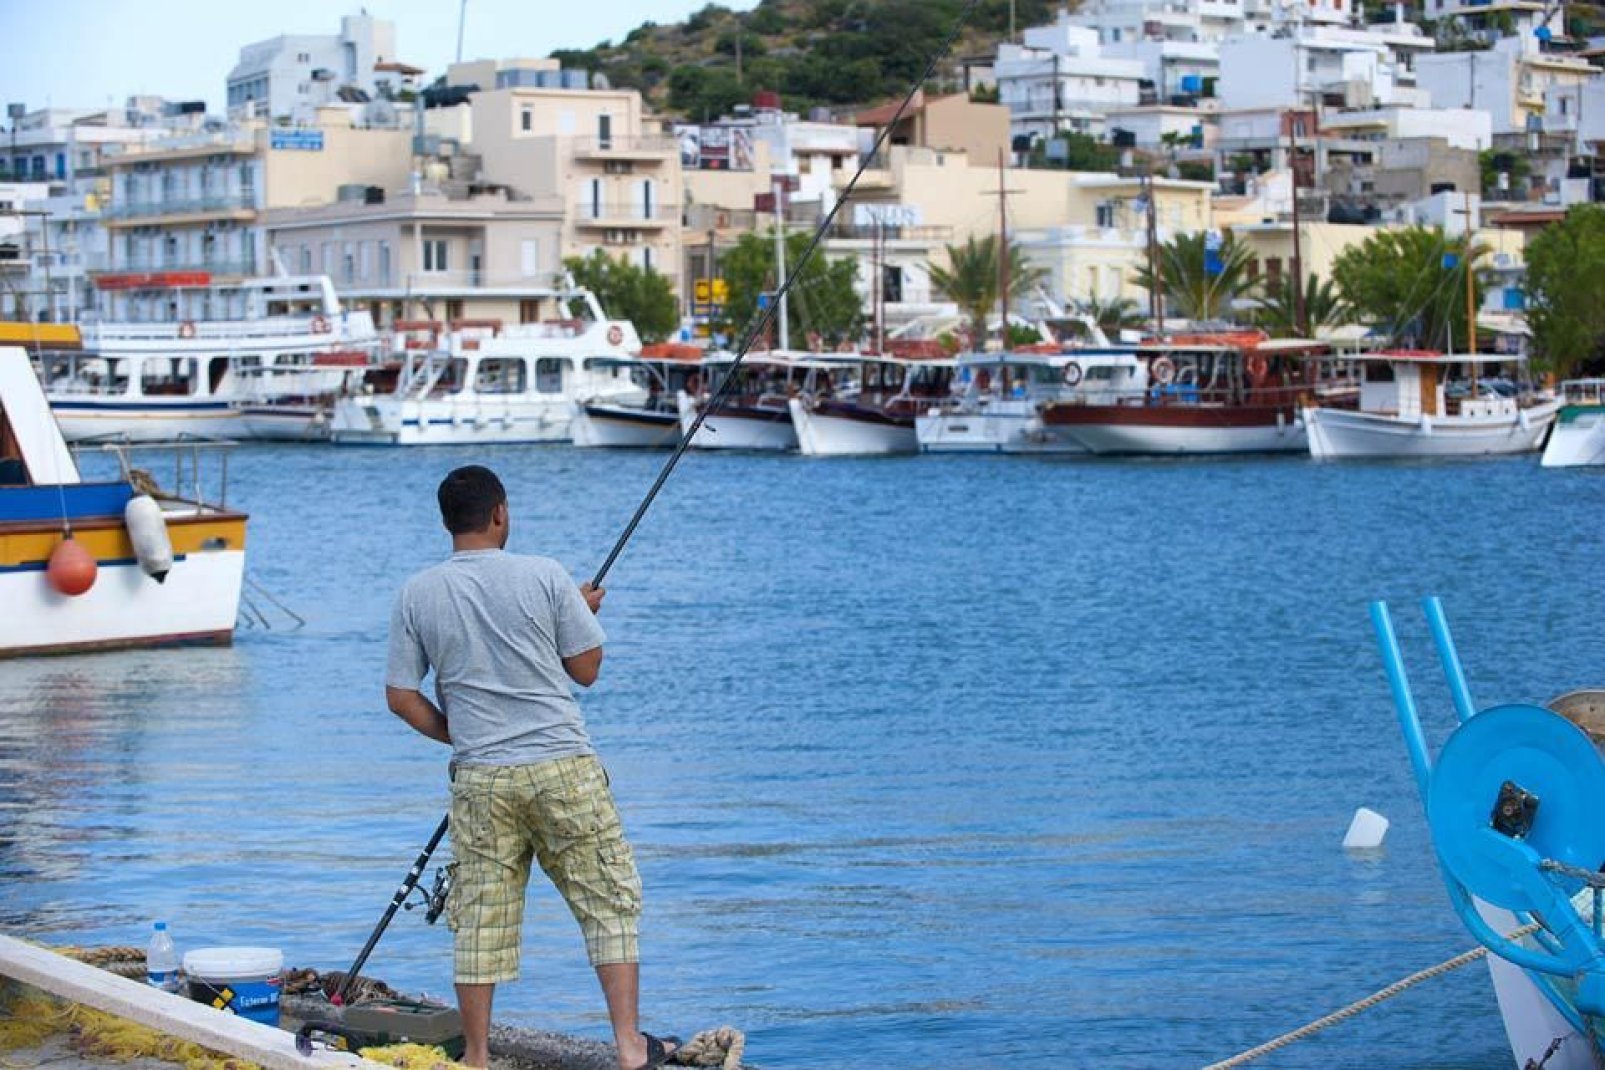 Im Hafen dieses Dorfes ankern immer noch die bunten traditionellen Fischerboote, die für den traditionellen Fischfang verwendet werden.